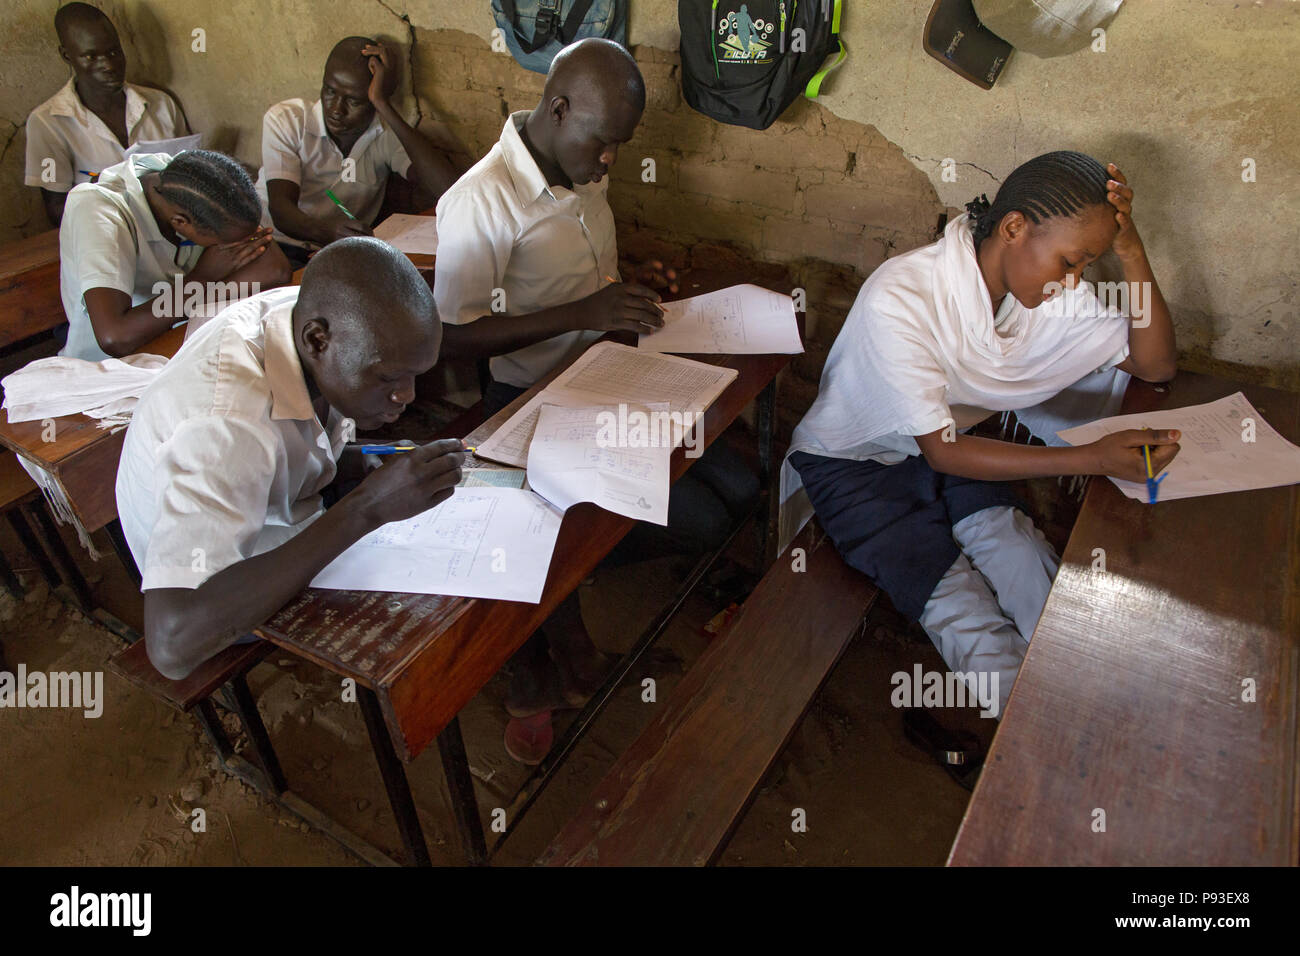 Kakuma, Kenya - Les élèves rédigent leurs examens dans une salle de classe d'une école dans le camp de réfugiés de Kakuma. Banque D'Images